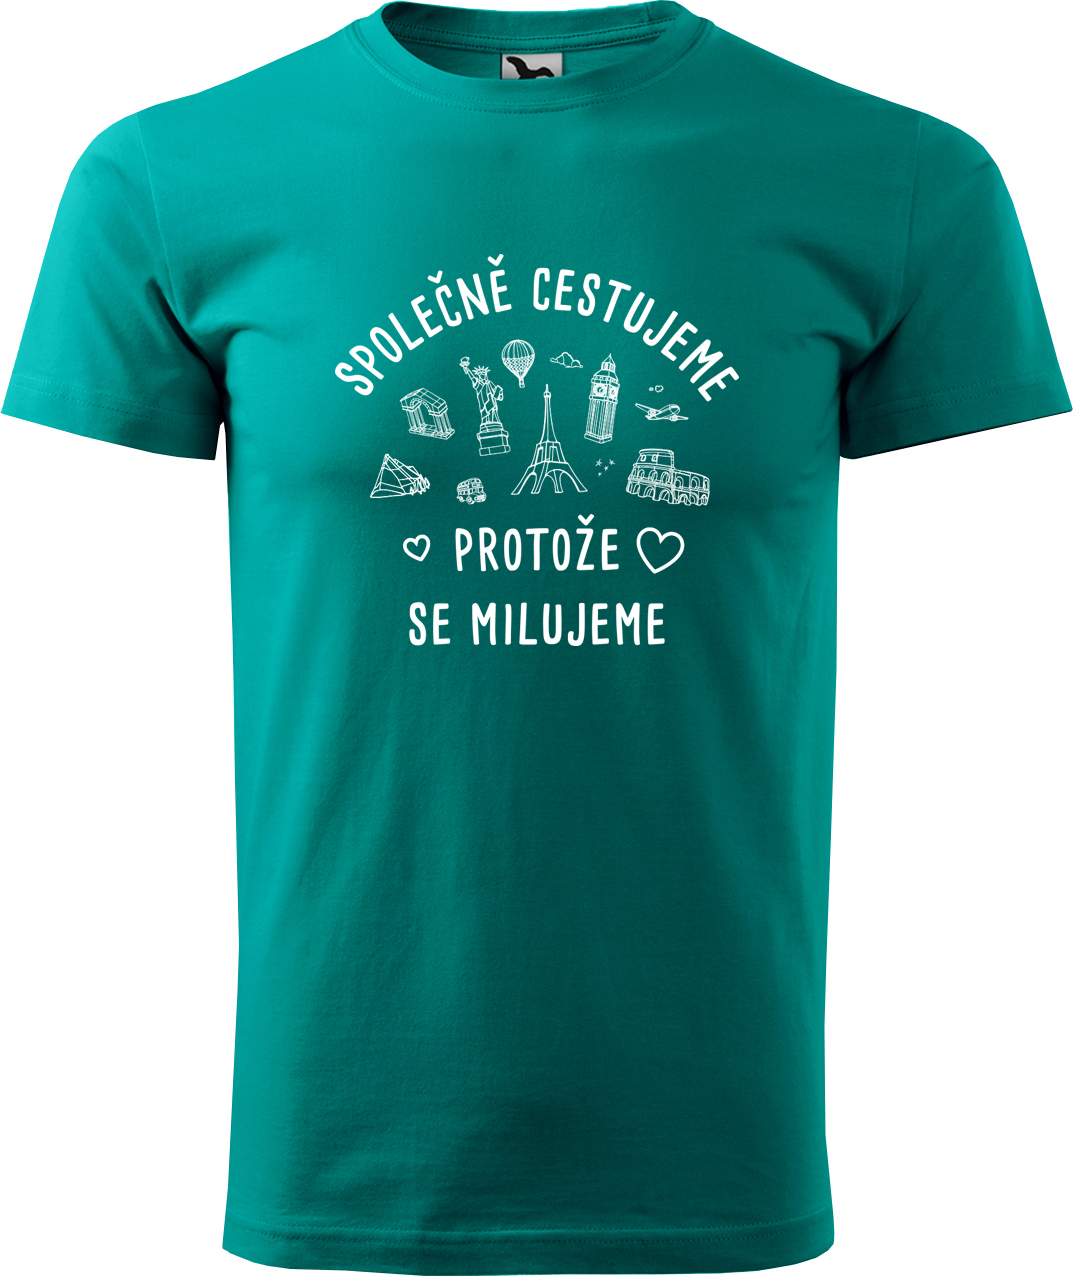 Pánské cestovatelské tričko - Společně cestujeme protože se milujeme Velikost: S, Barva: Emerald (19), Střih: pánský